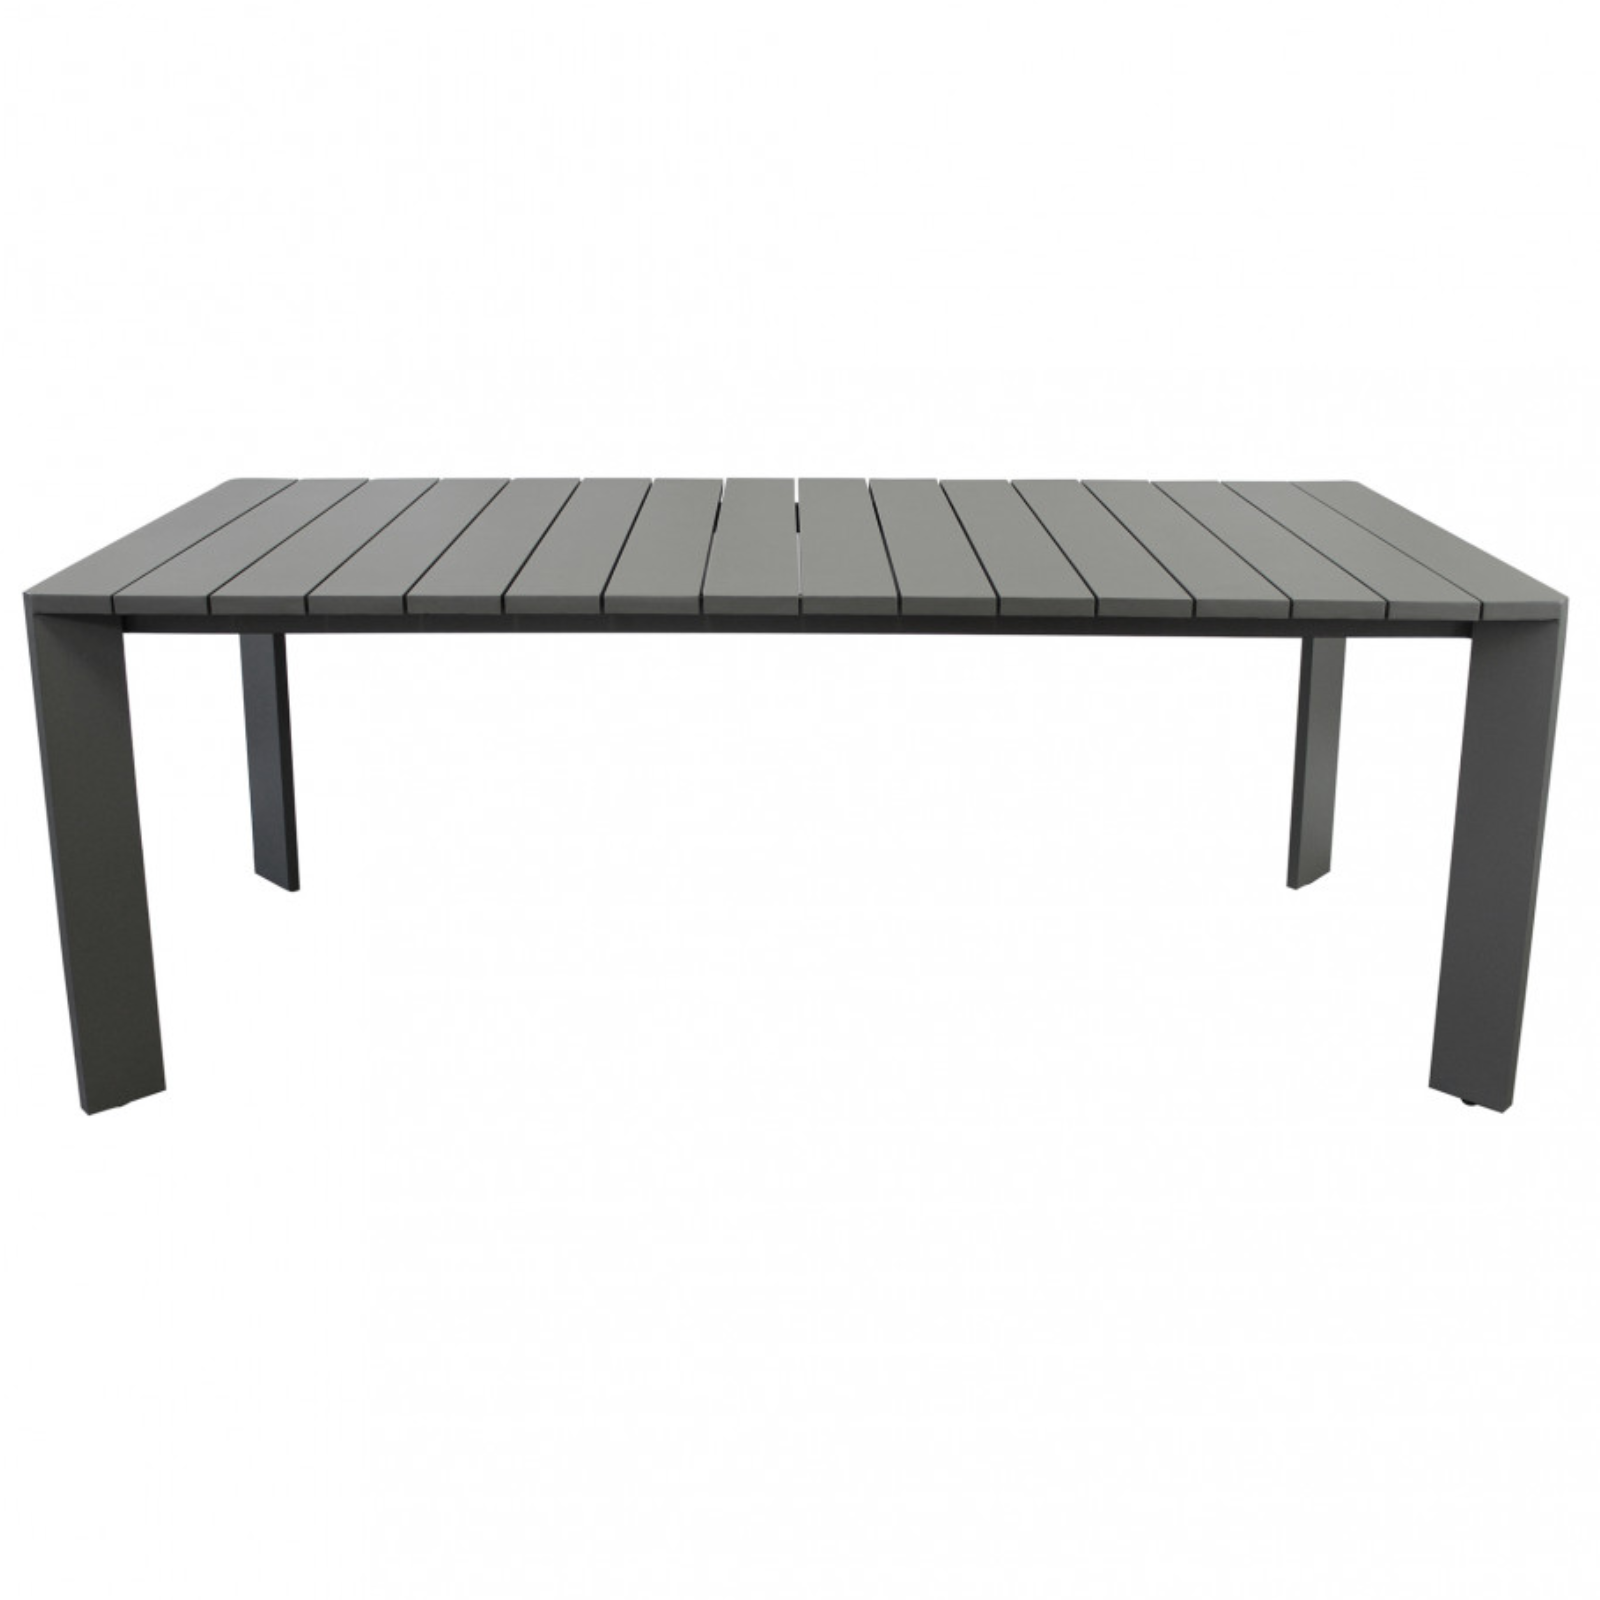 Tavolo rettangolare 200x100 in alluminio antracite da interno o esterno - Connec